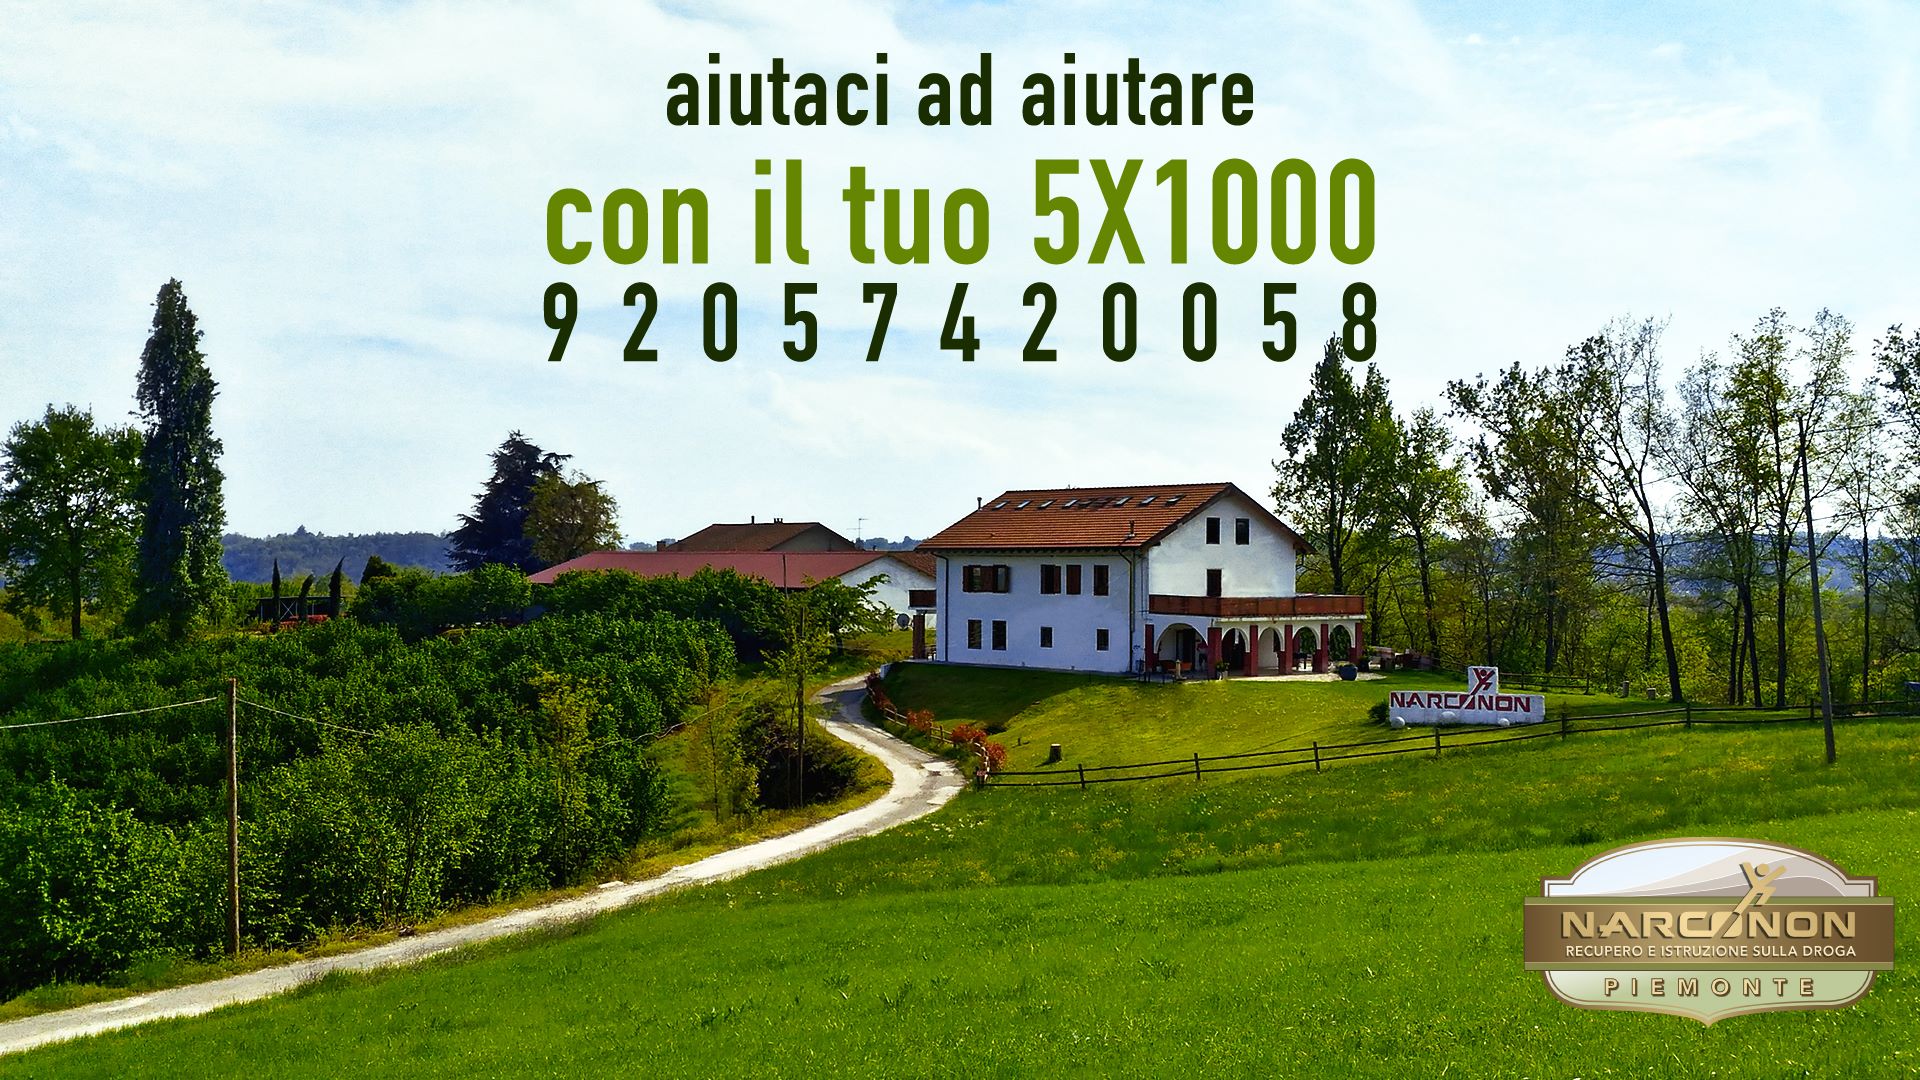 Centro Narconon Piemonte dona il 5x1000